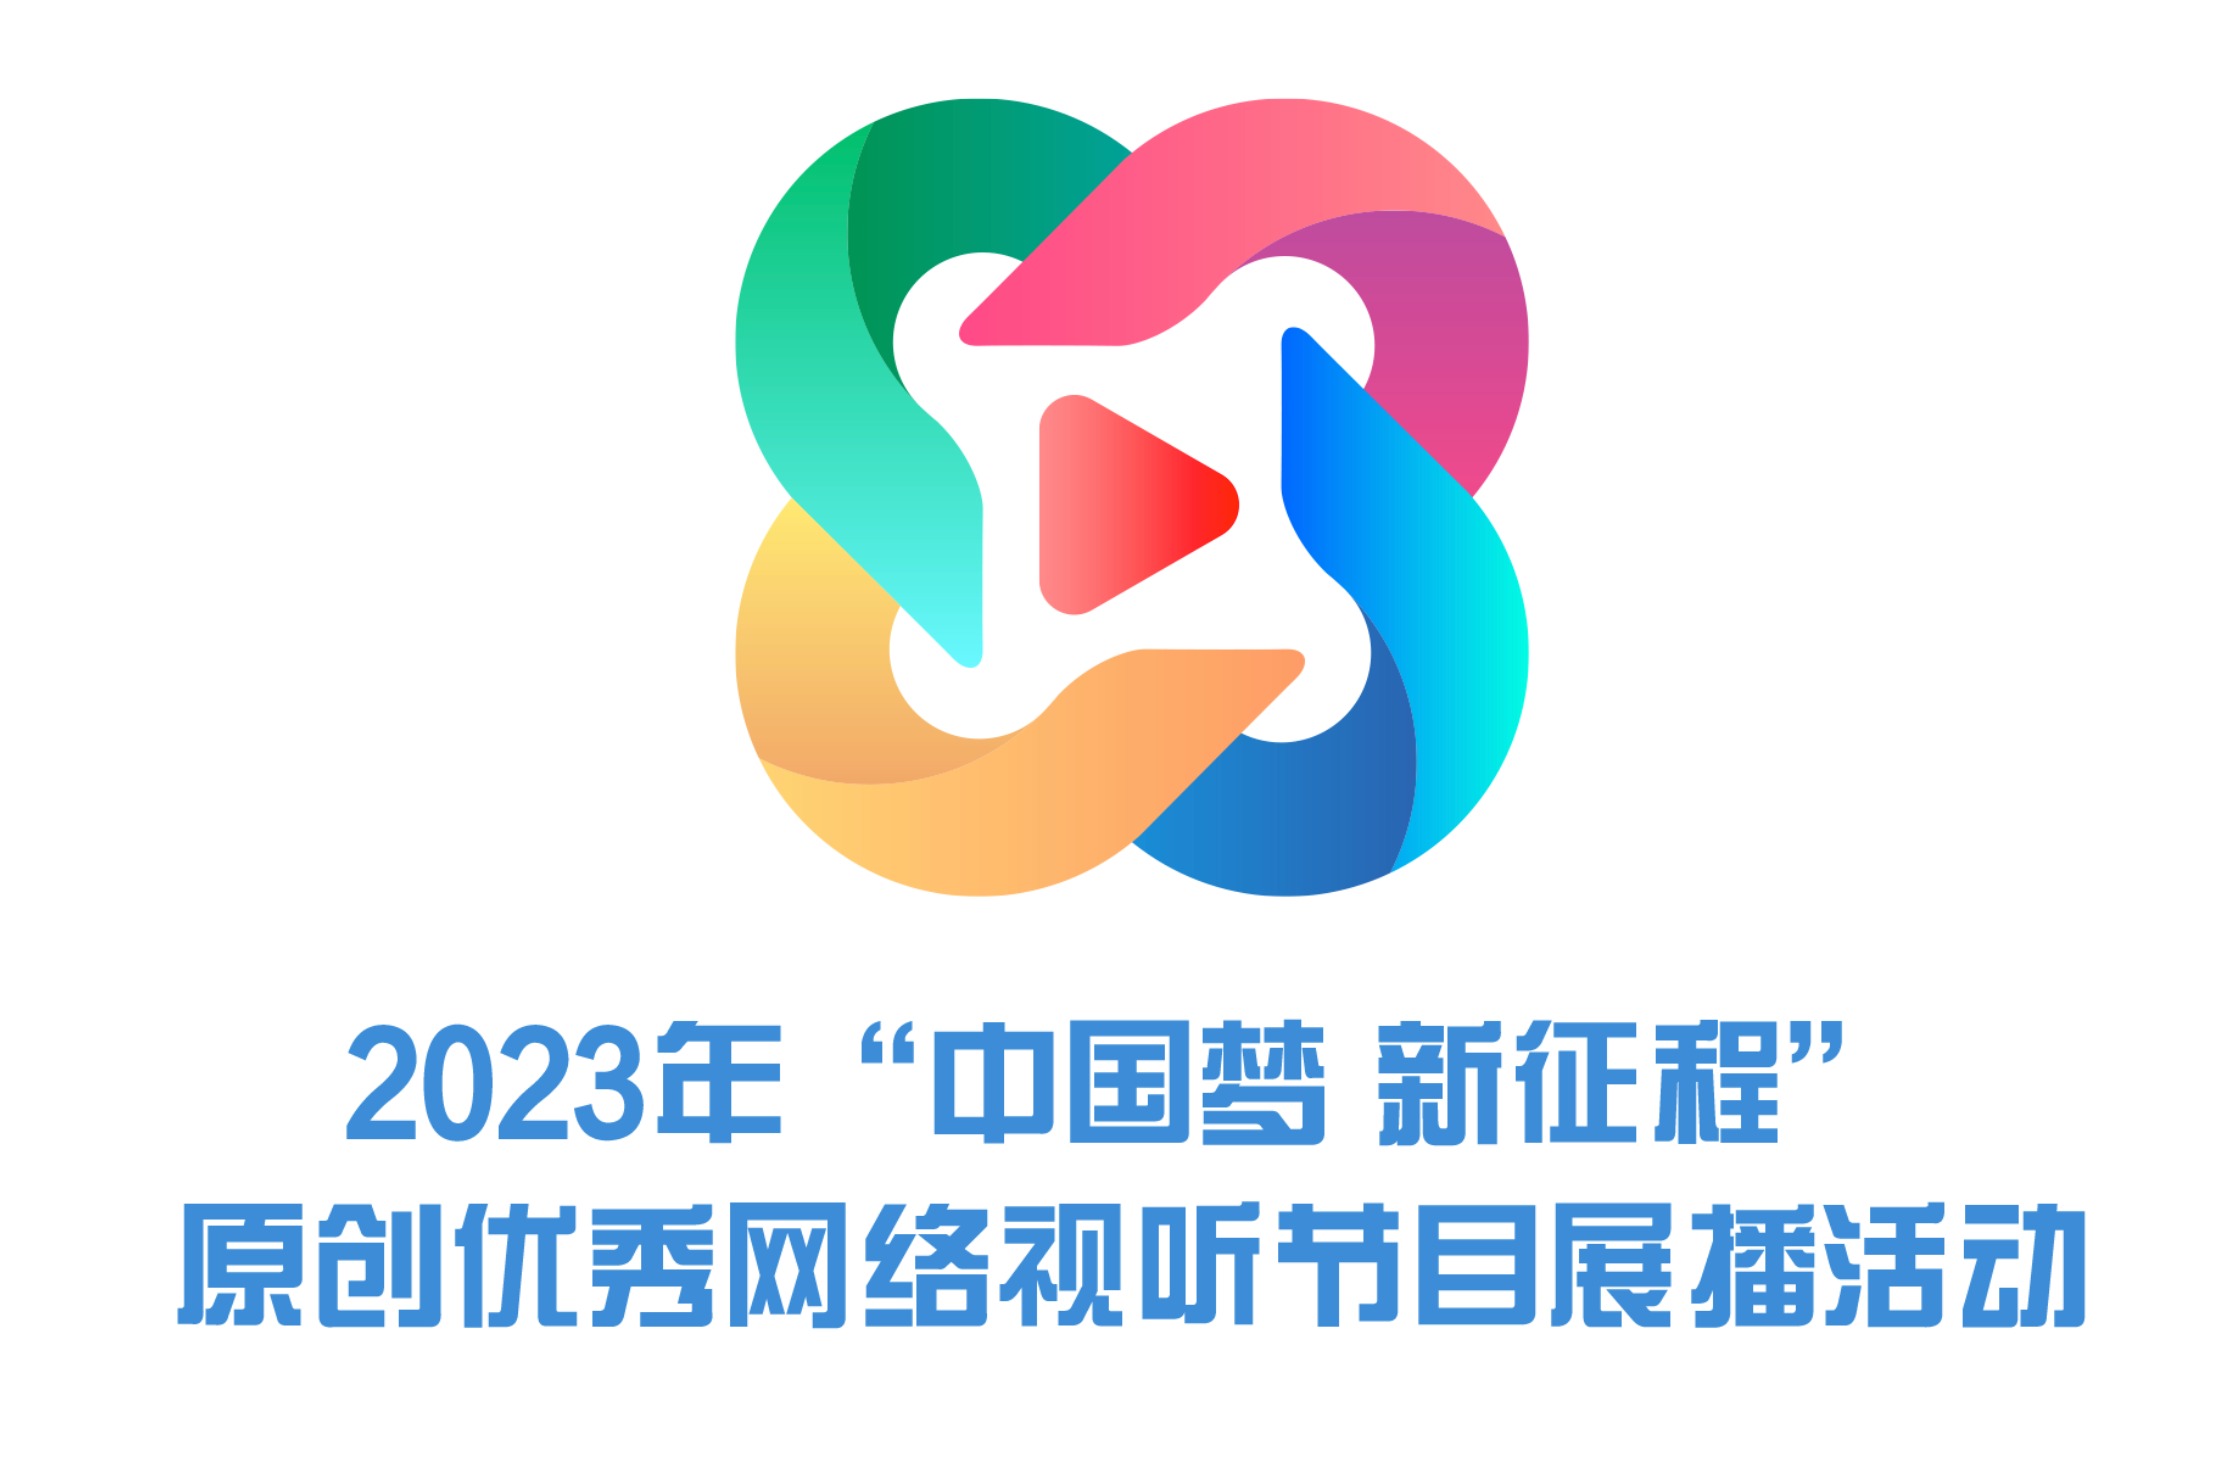 2023年“中国梦 新征程”原创优秀网络视听节目展播活动